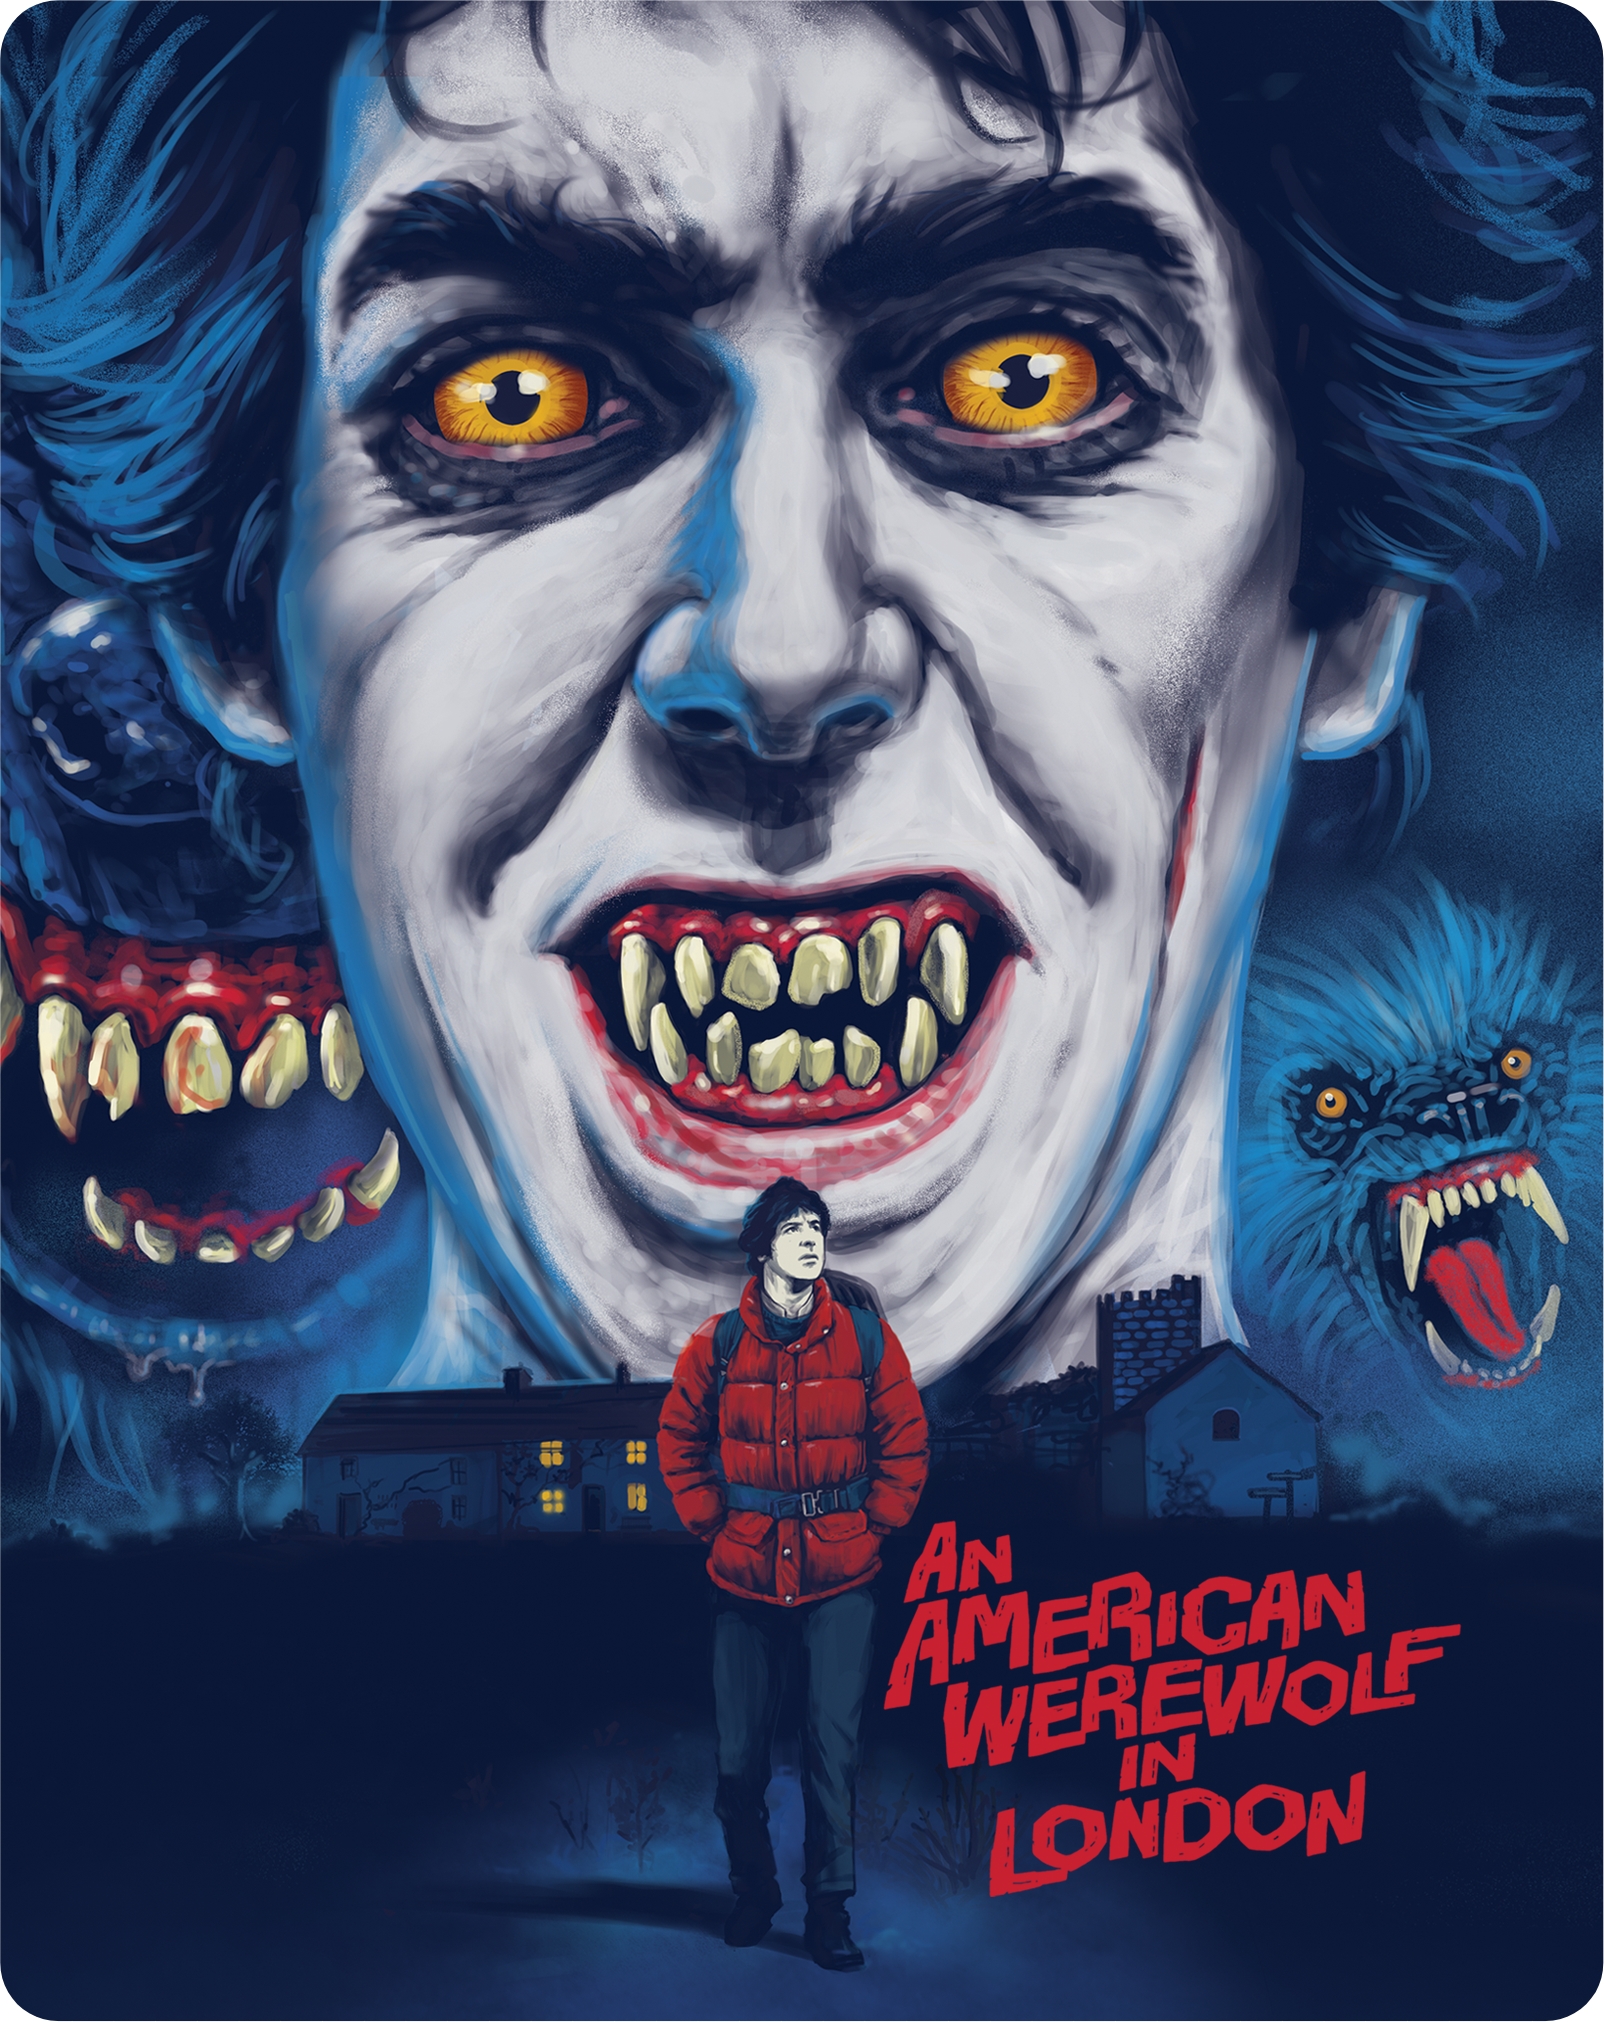 An American Werewolf in London [Blu-ray] [1981] - Best Buy